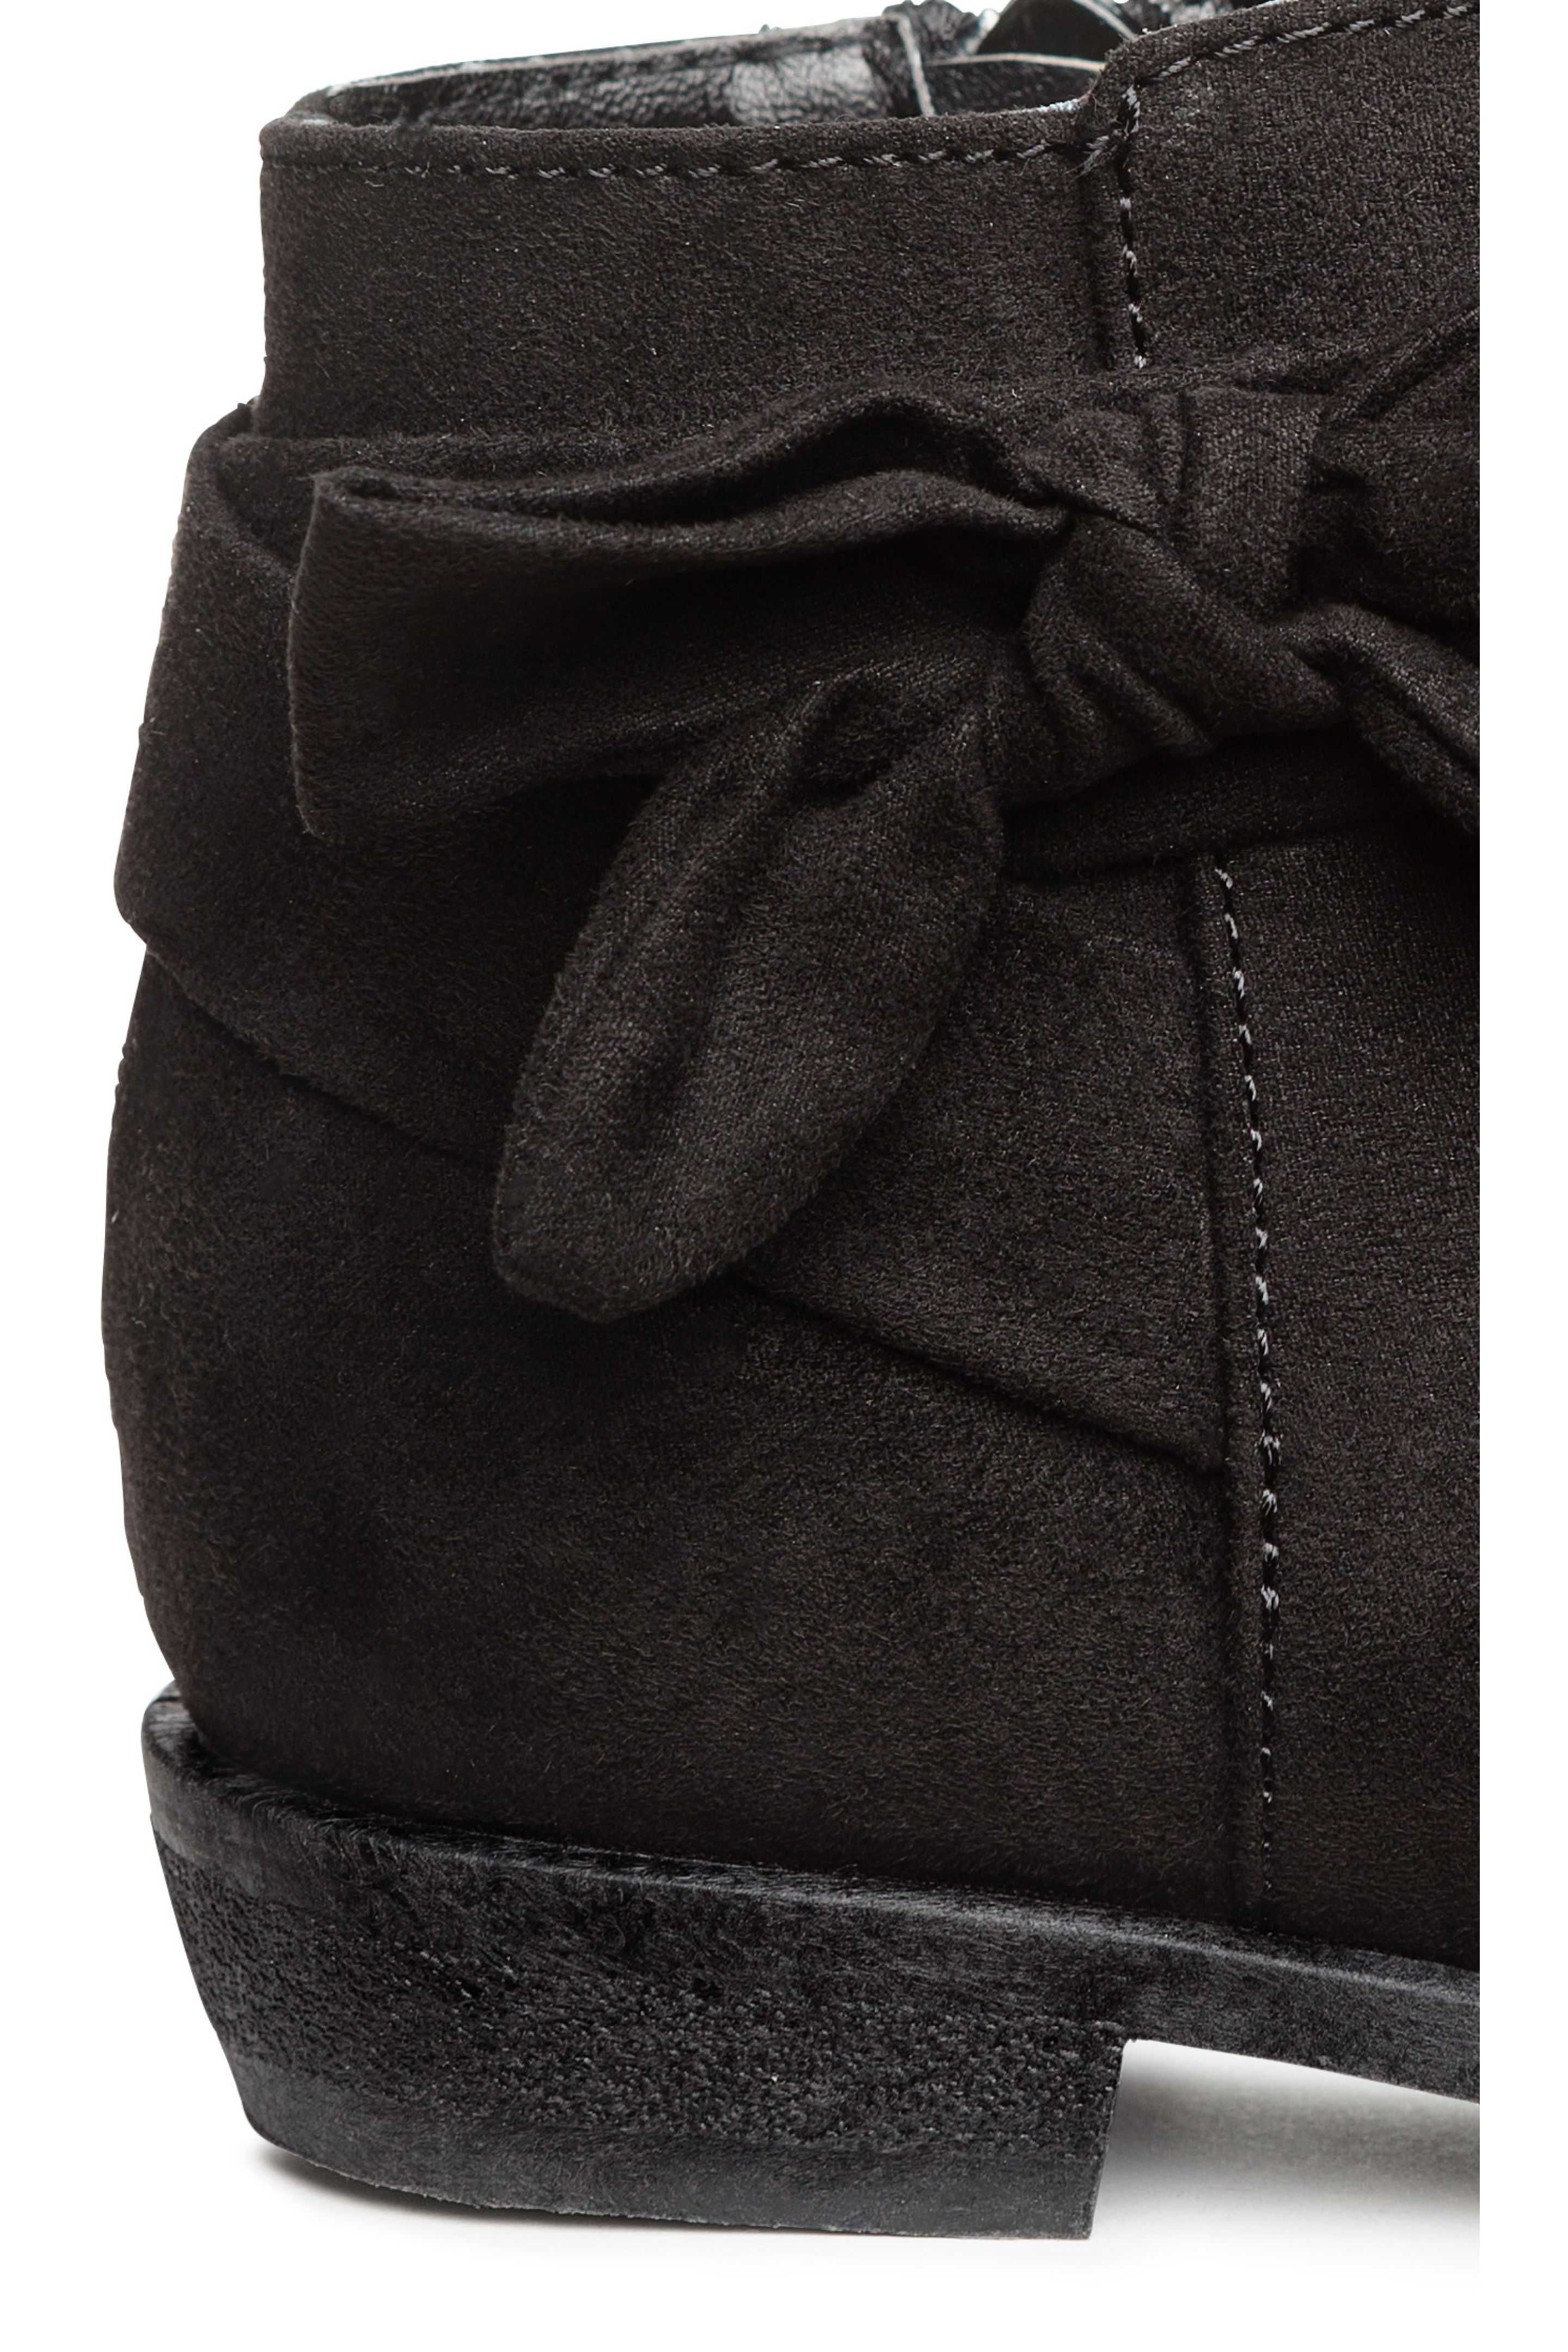 51-> czarne botki H&M ocieplone MEGA r.25 15,5cm